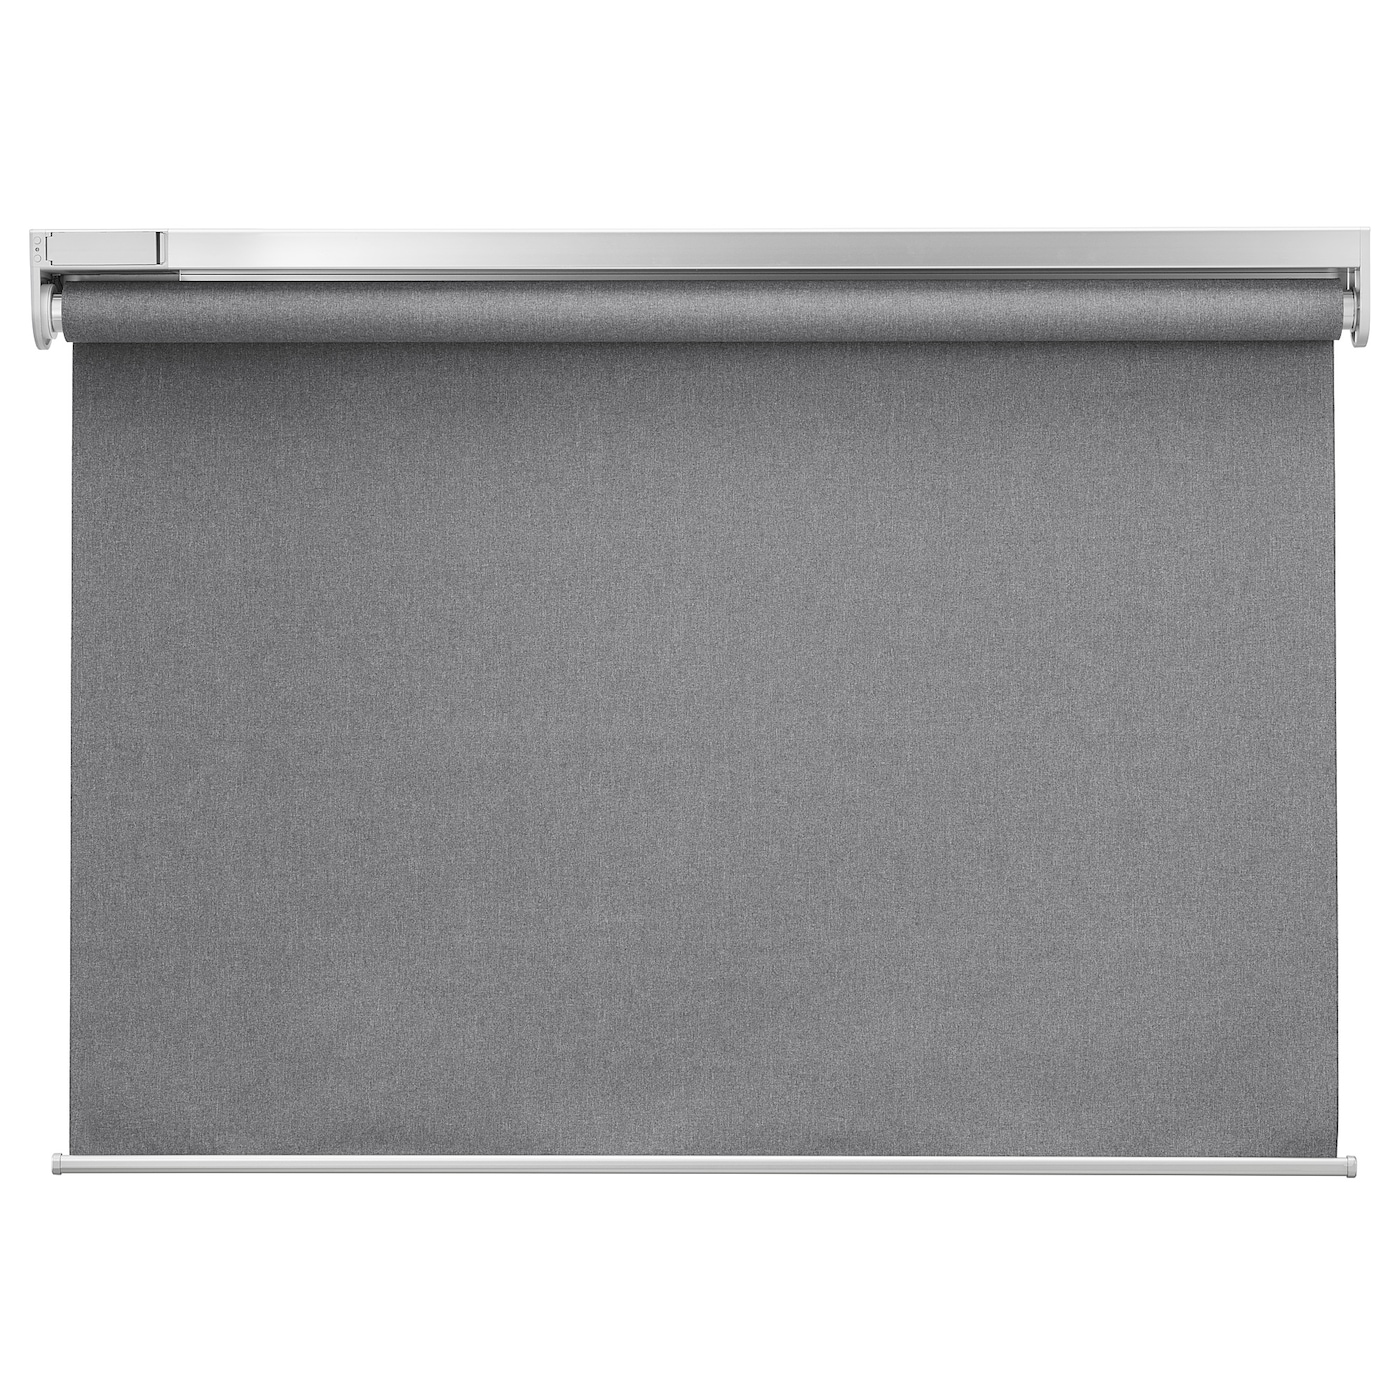 Рулонная штора (blackout) - IKEA FYRTUR, 195х120 см, серый, ФЮРТЮР ИКЕА